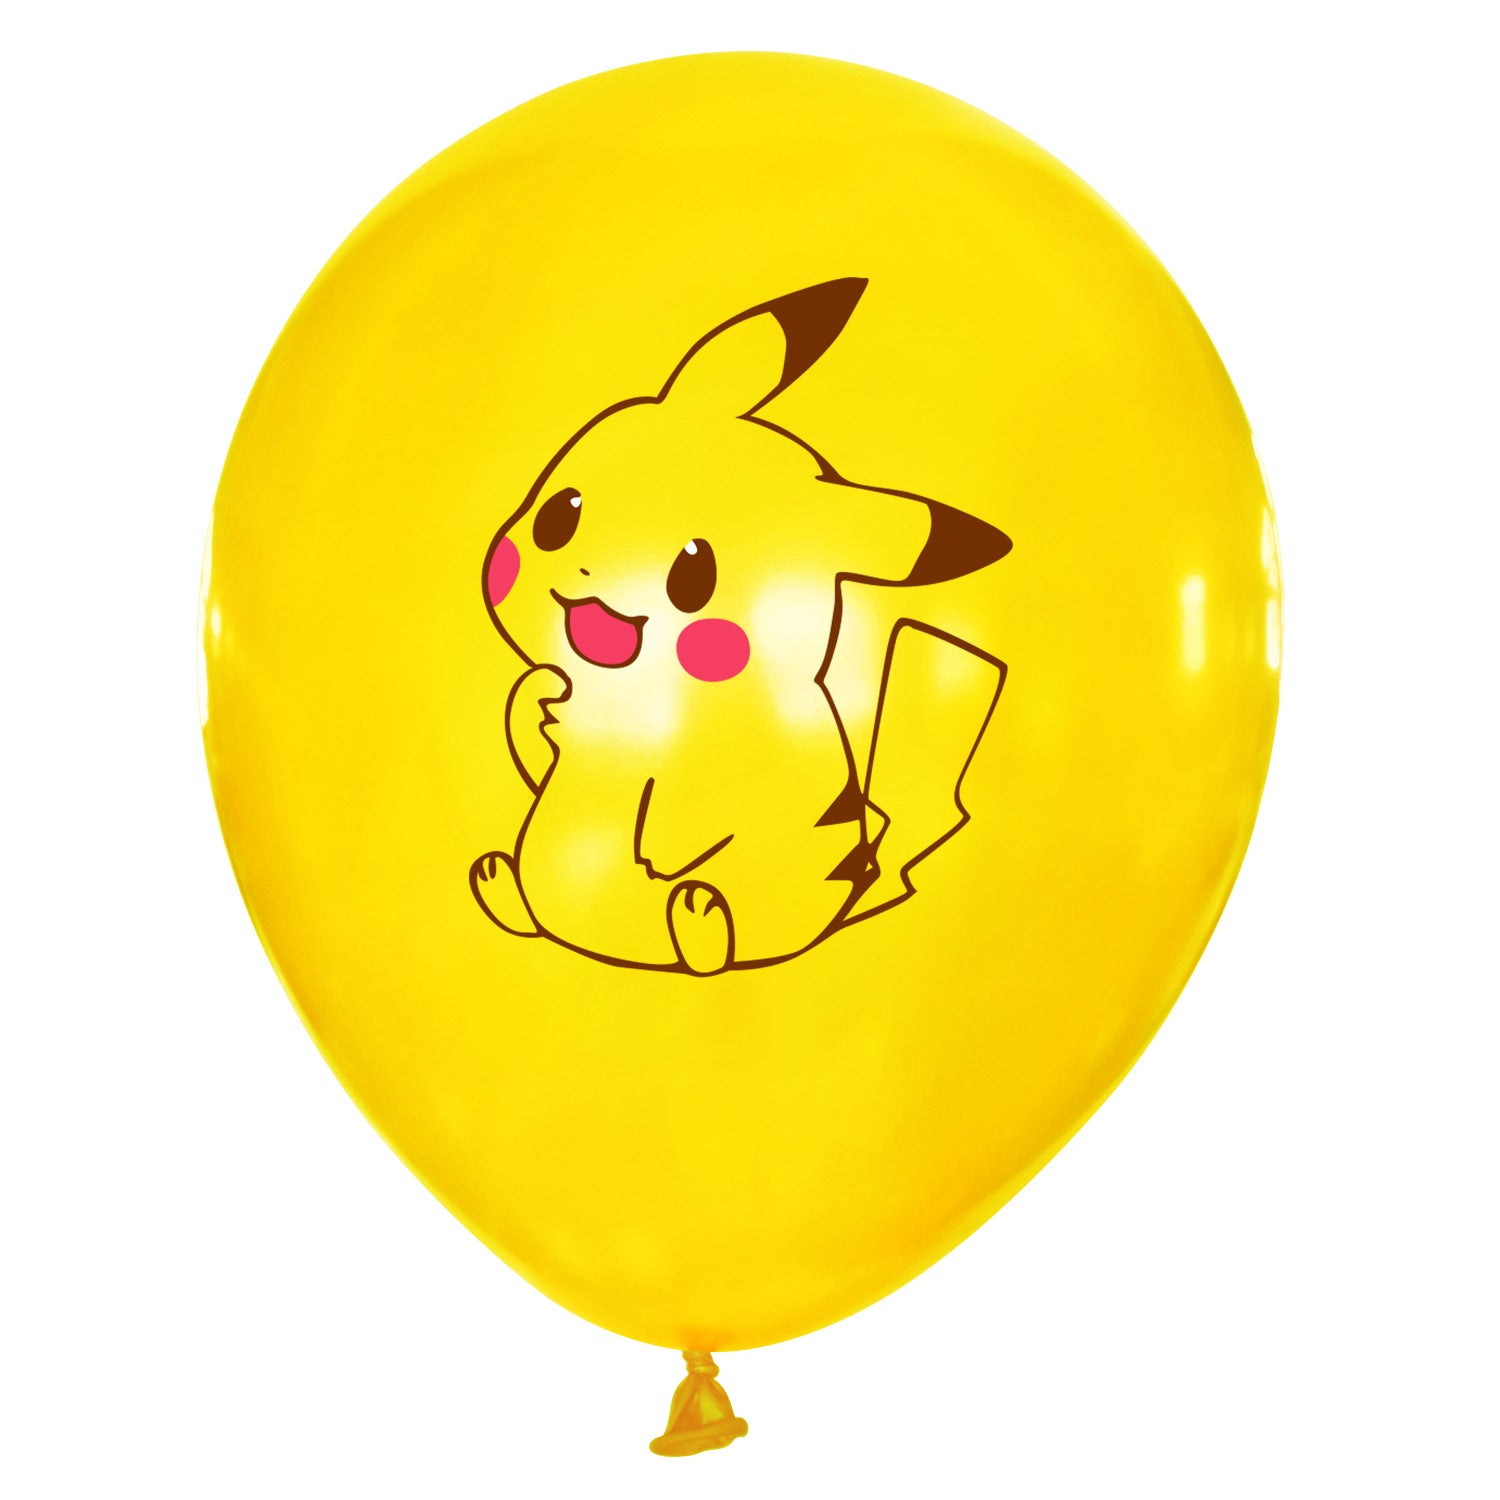 Comprar globo forma pikachu. Precios baratos